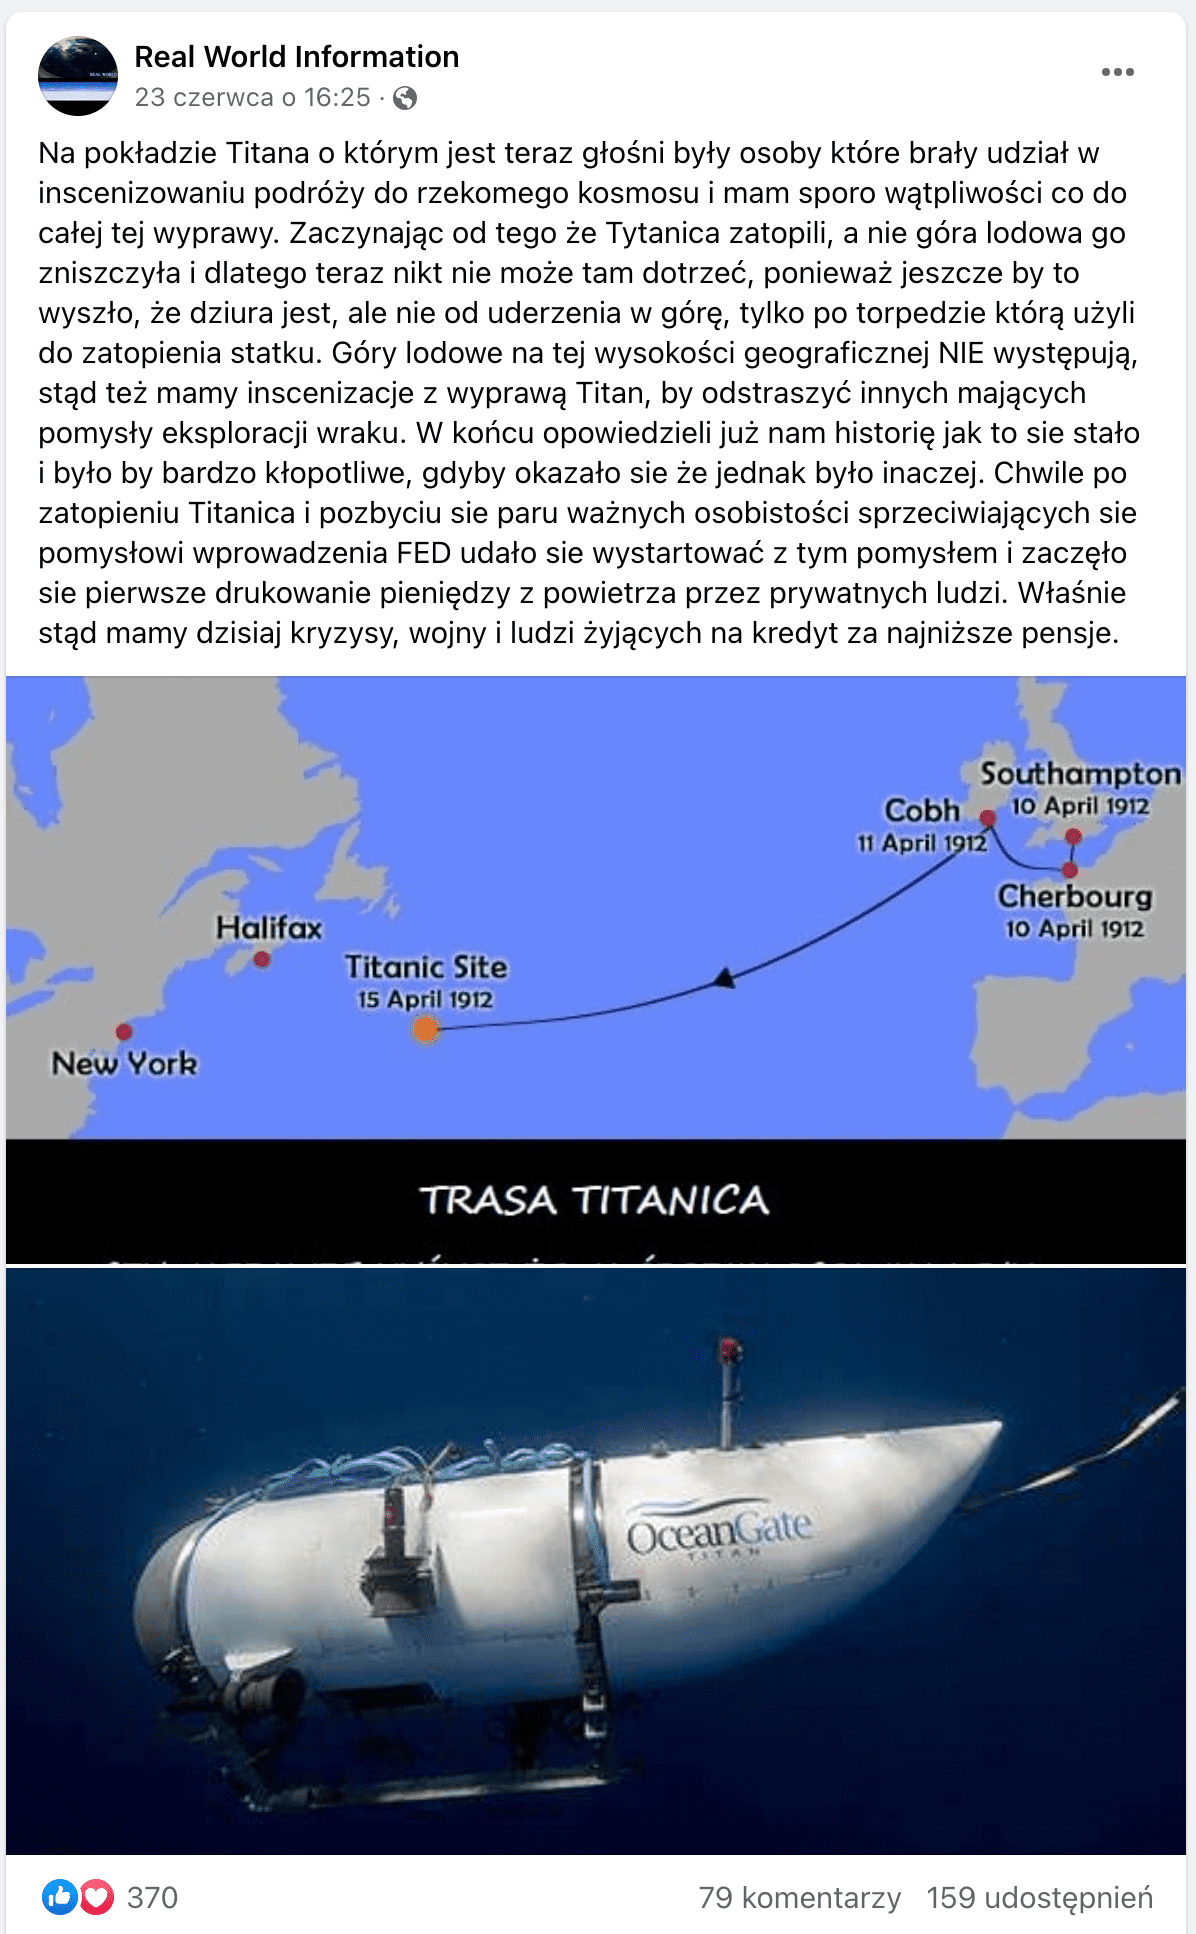 Zrzut ekranu posta na Facebooku. Dołączono do niego mapę przedstawiającą trasę Titanica oraz zdjęcie łodzi podwodnej Titan w zanurzeniu. Pod mapą napisano wielkimi literami: „CZY NAPRAWDĘ MYŚLISZ, ŻE NA ŚRODKU OCEANU W TYM POŁOŻENIU GEOGRAFICZNYM WYROSŁABY TAM GÓRA LODOWA?”.